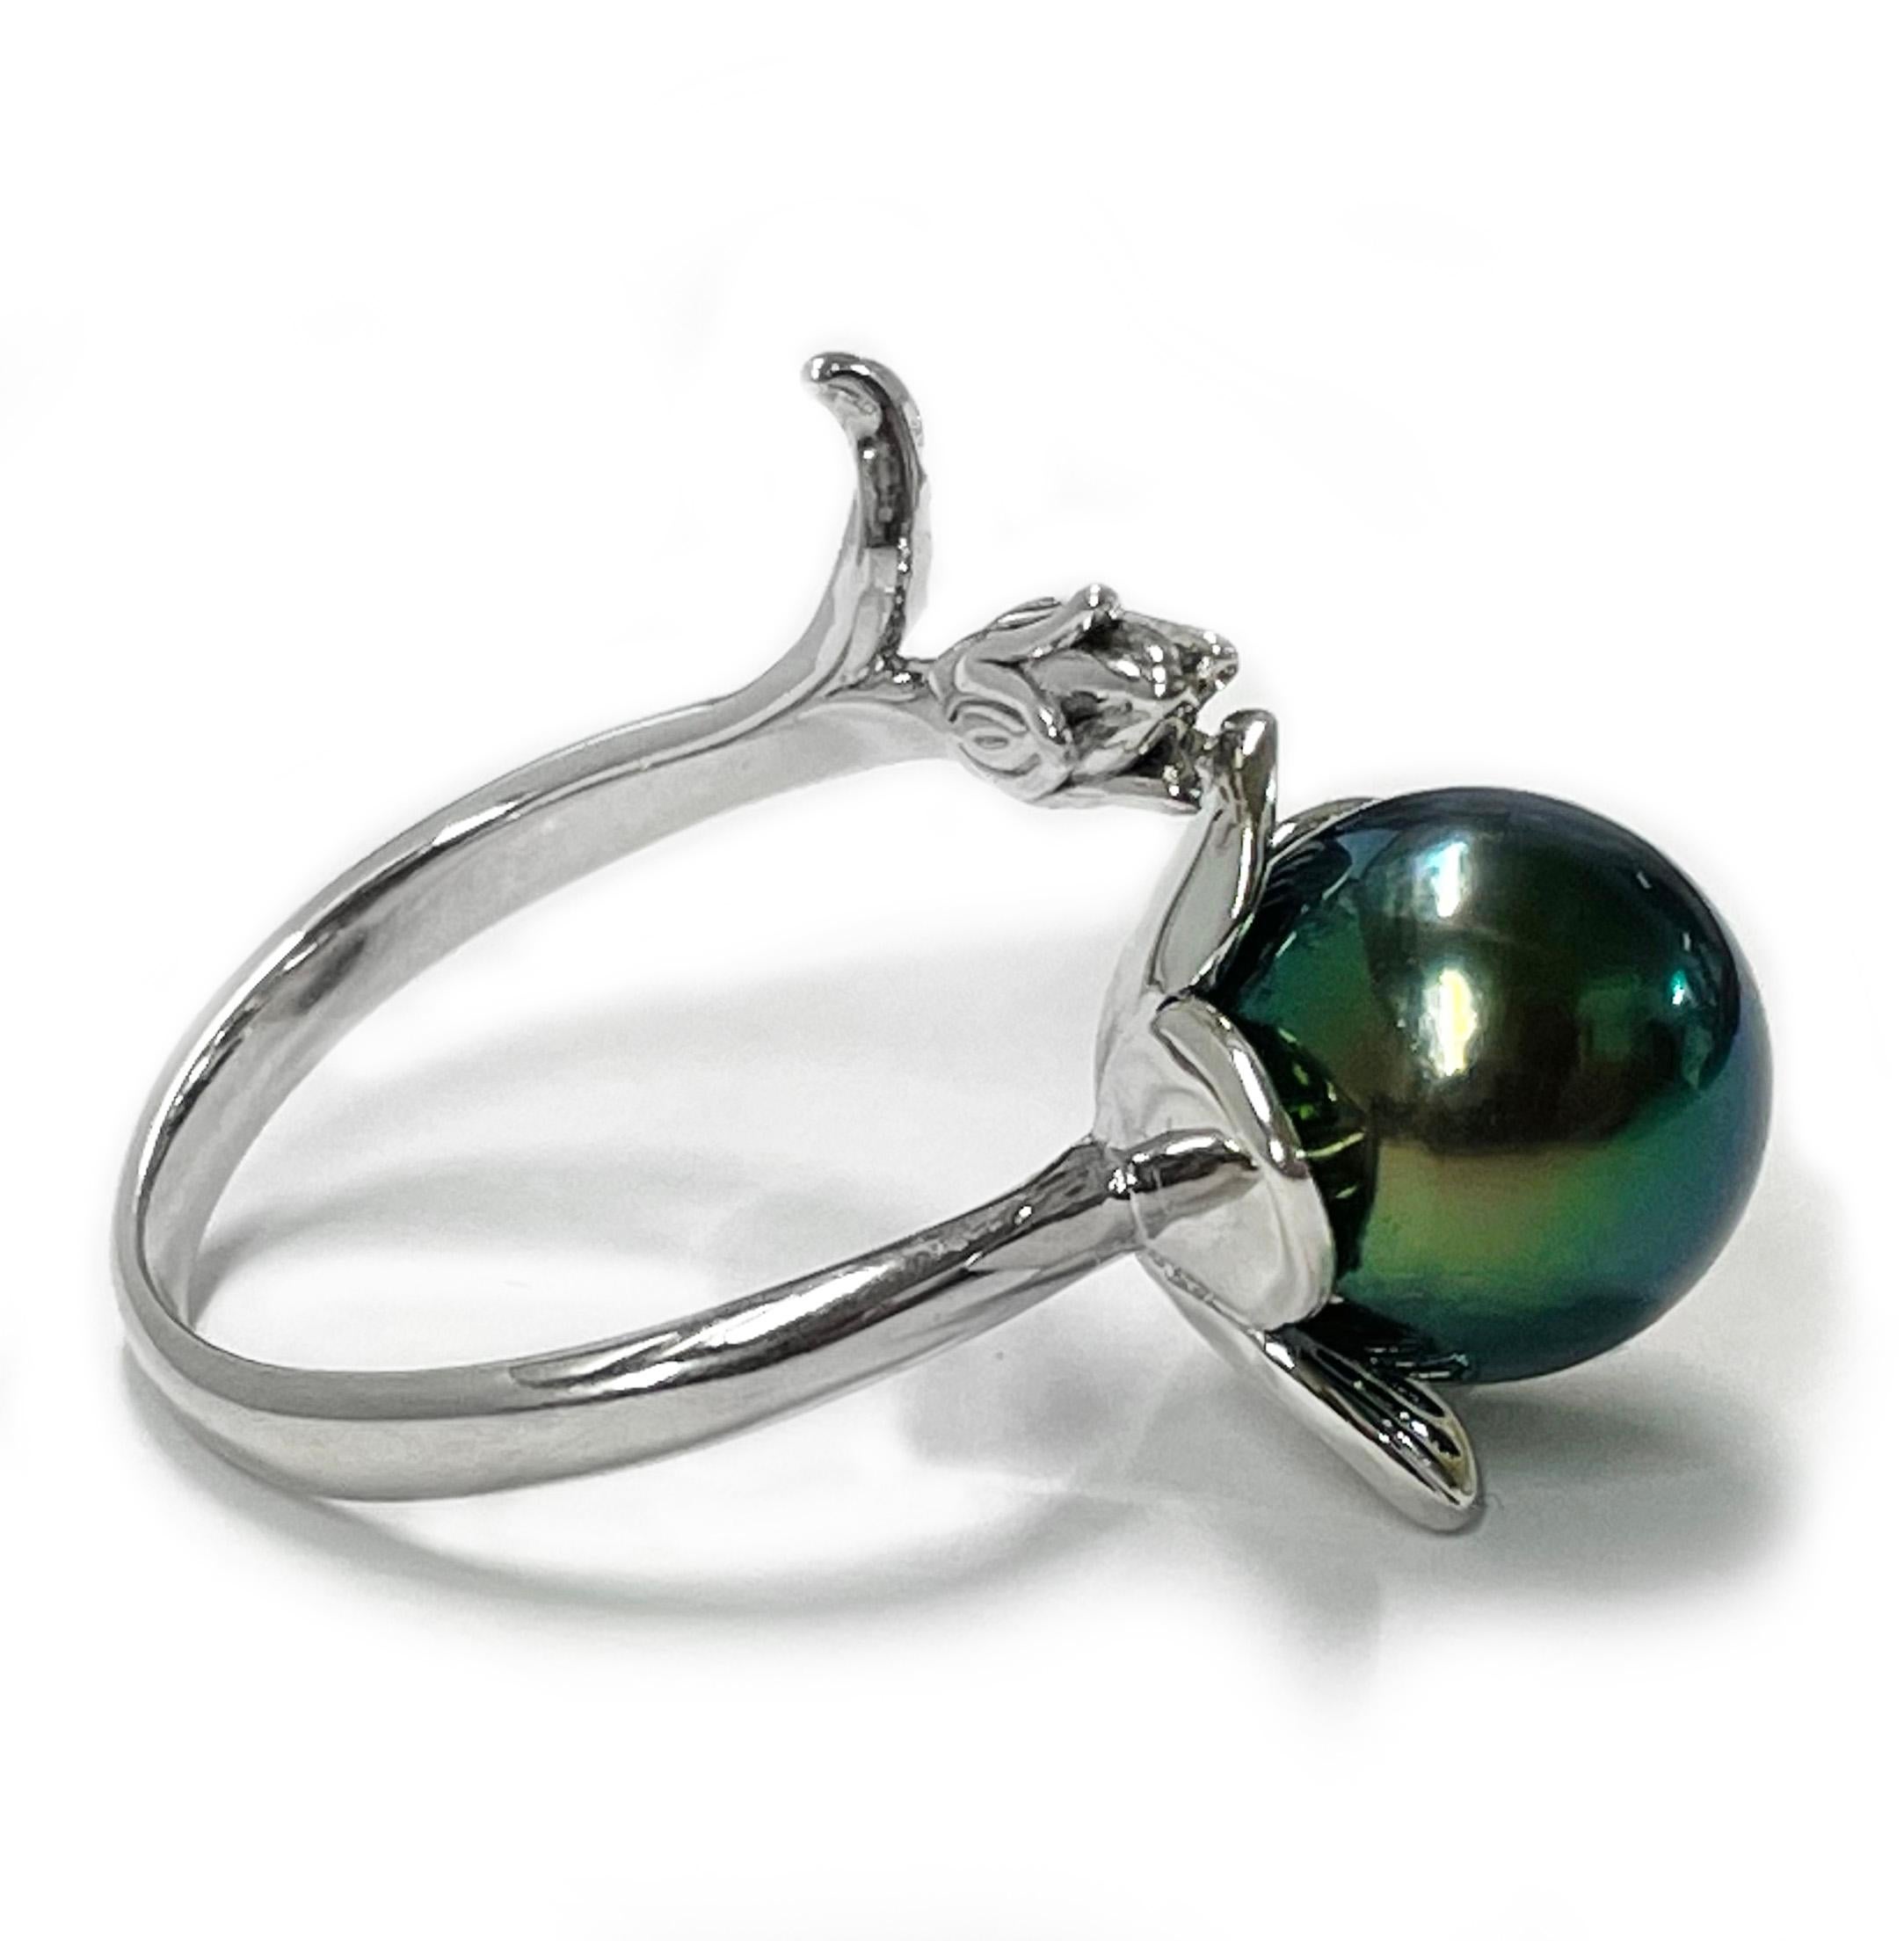 Bague en argent sterling avec perles de Tahiti. La bague comporte un anneau qui imite une tige et une fleur dans un design en dérivation avec une perle de Tahiti de couleur verte absolument magnifique. La perle mesure 10,5 mm et est sertie sur une